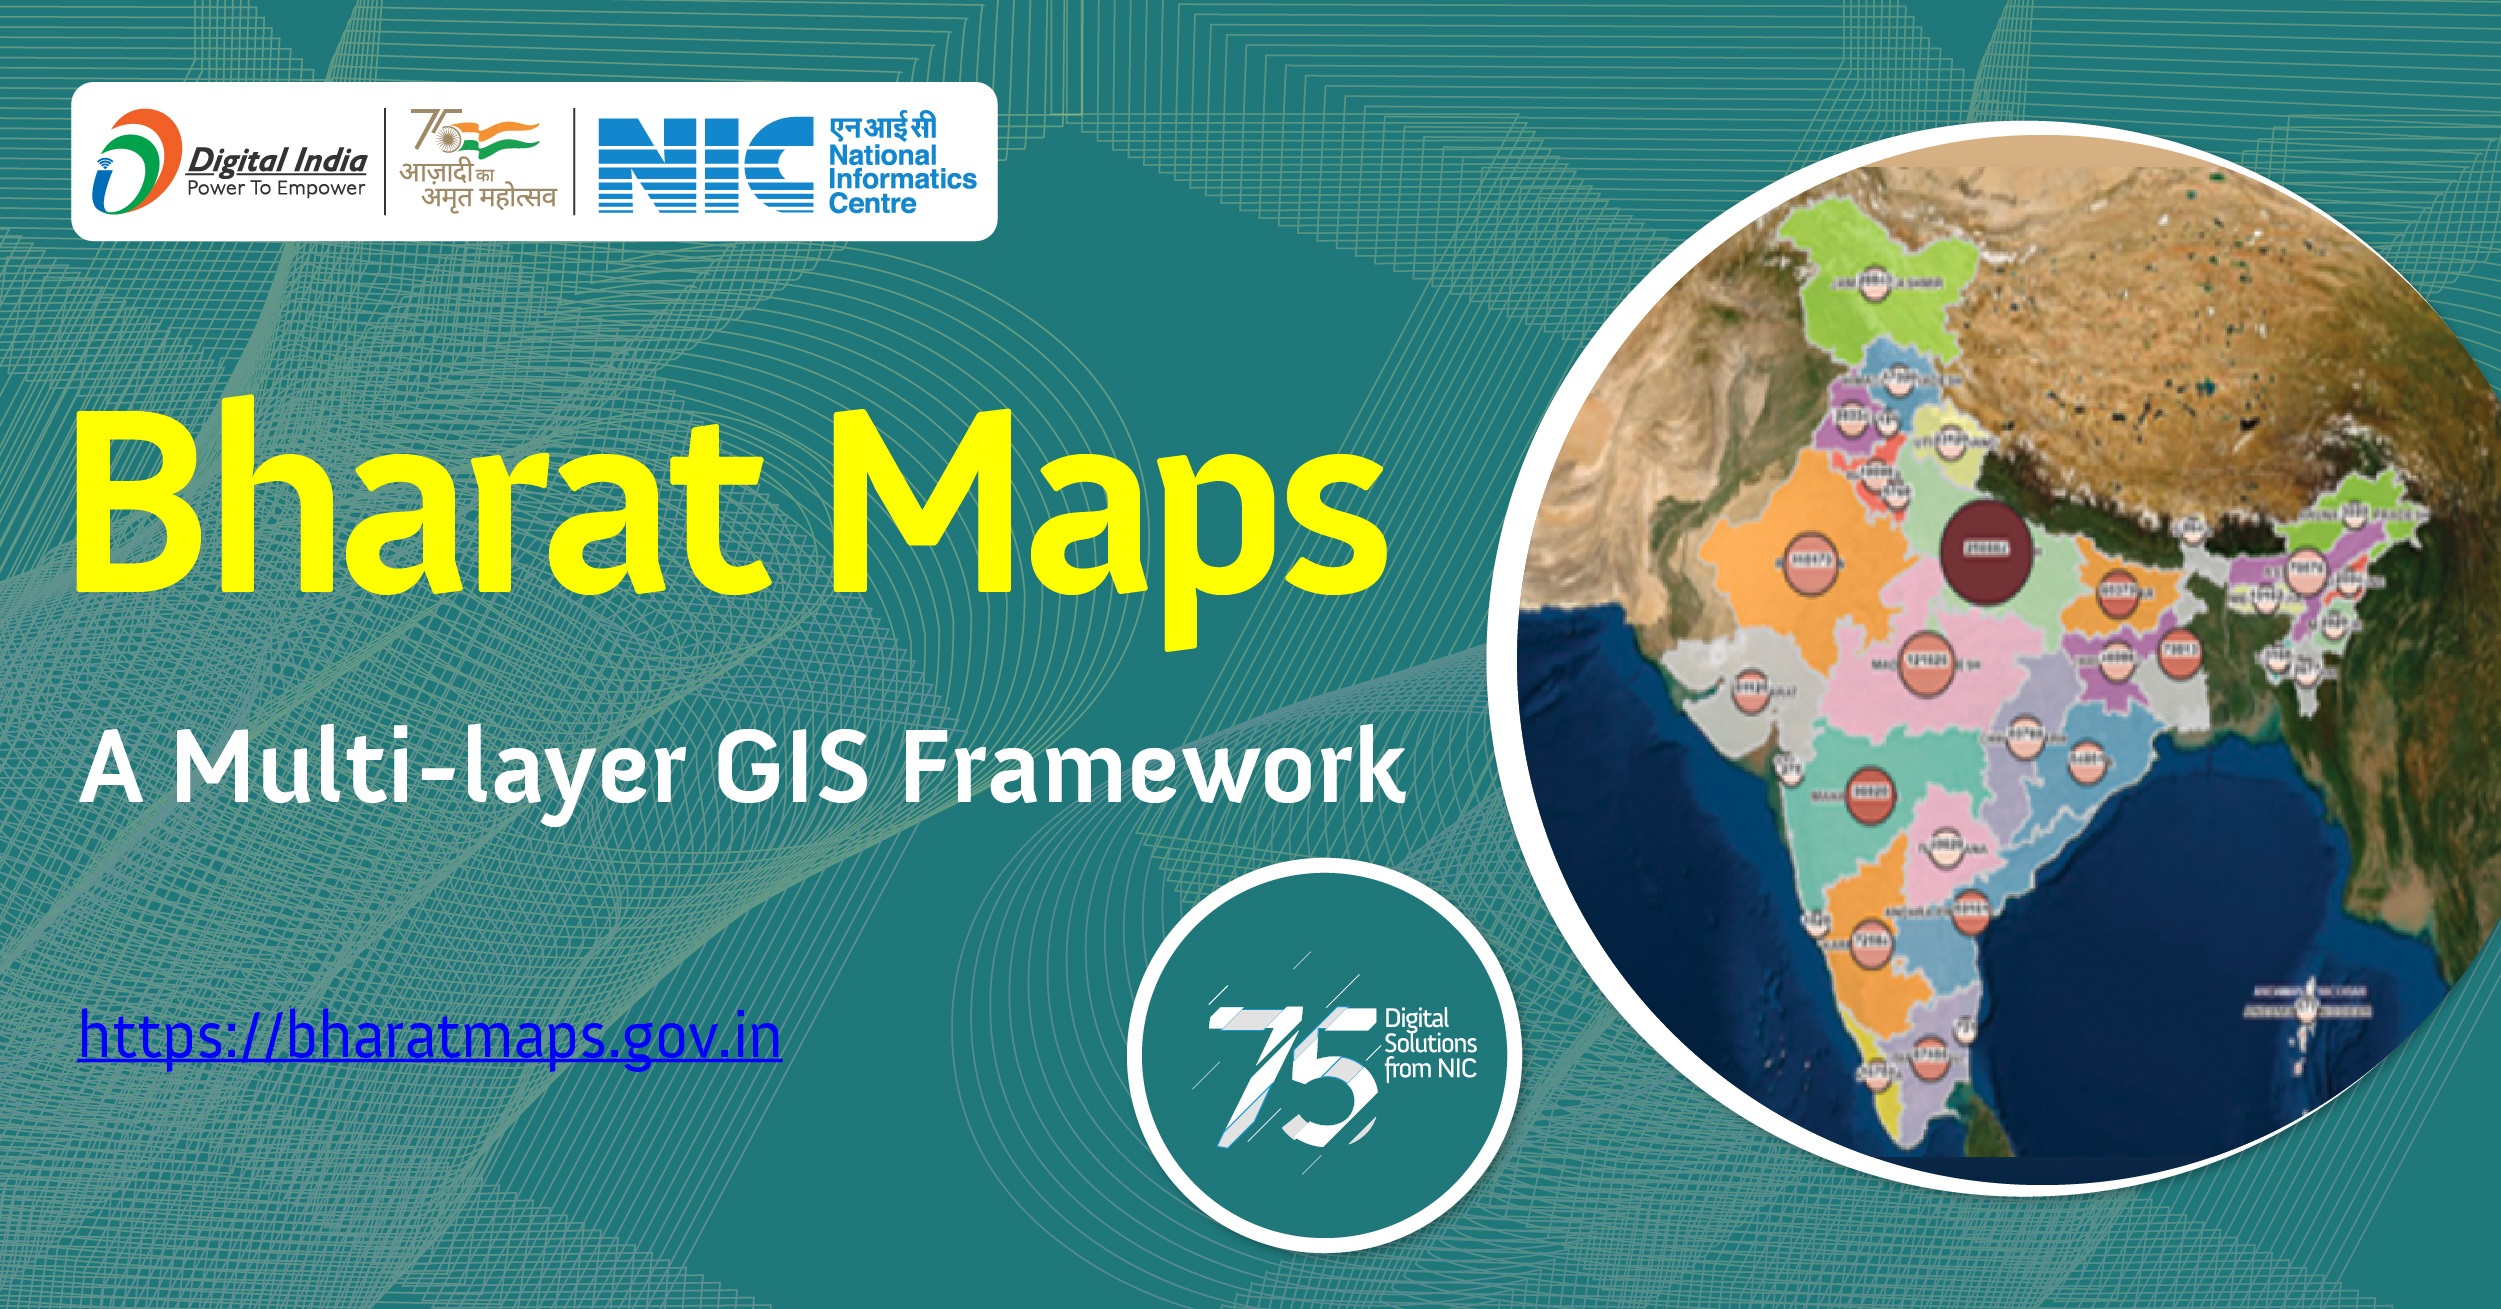 भारत मैप्स - एक बहुस्तरीय जीआईएस प्लेटफॉर्म जिसमें वैश्विक भू-स्थानिक मानक के अनुसार देशव्यापी आधार मानचित्र, उपग्रह चित्र और हाइब्रिड मानचित्र शामिल हैं